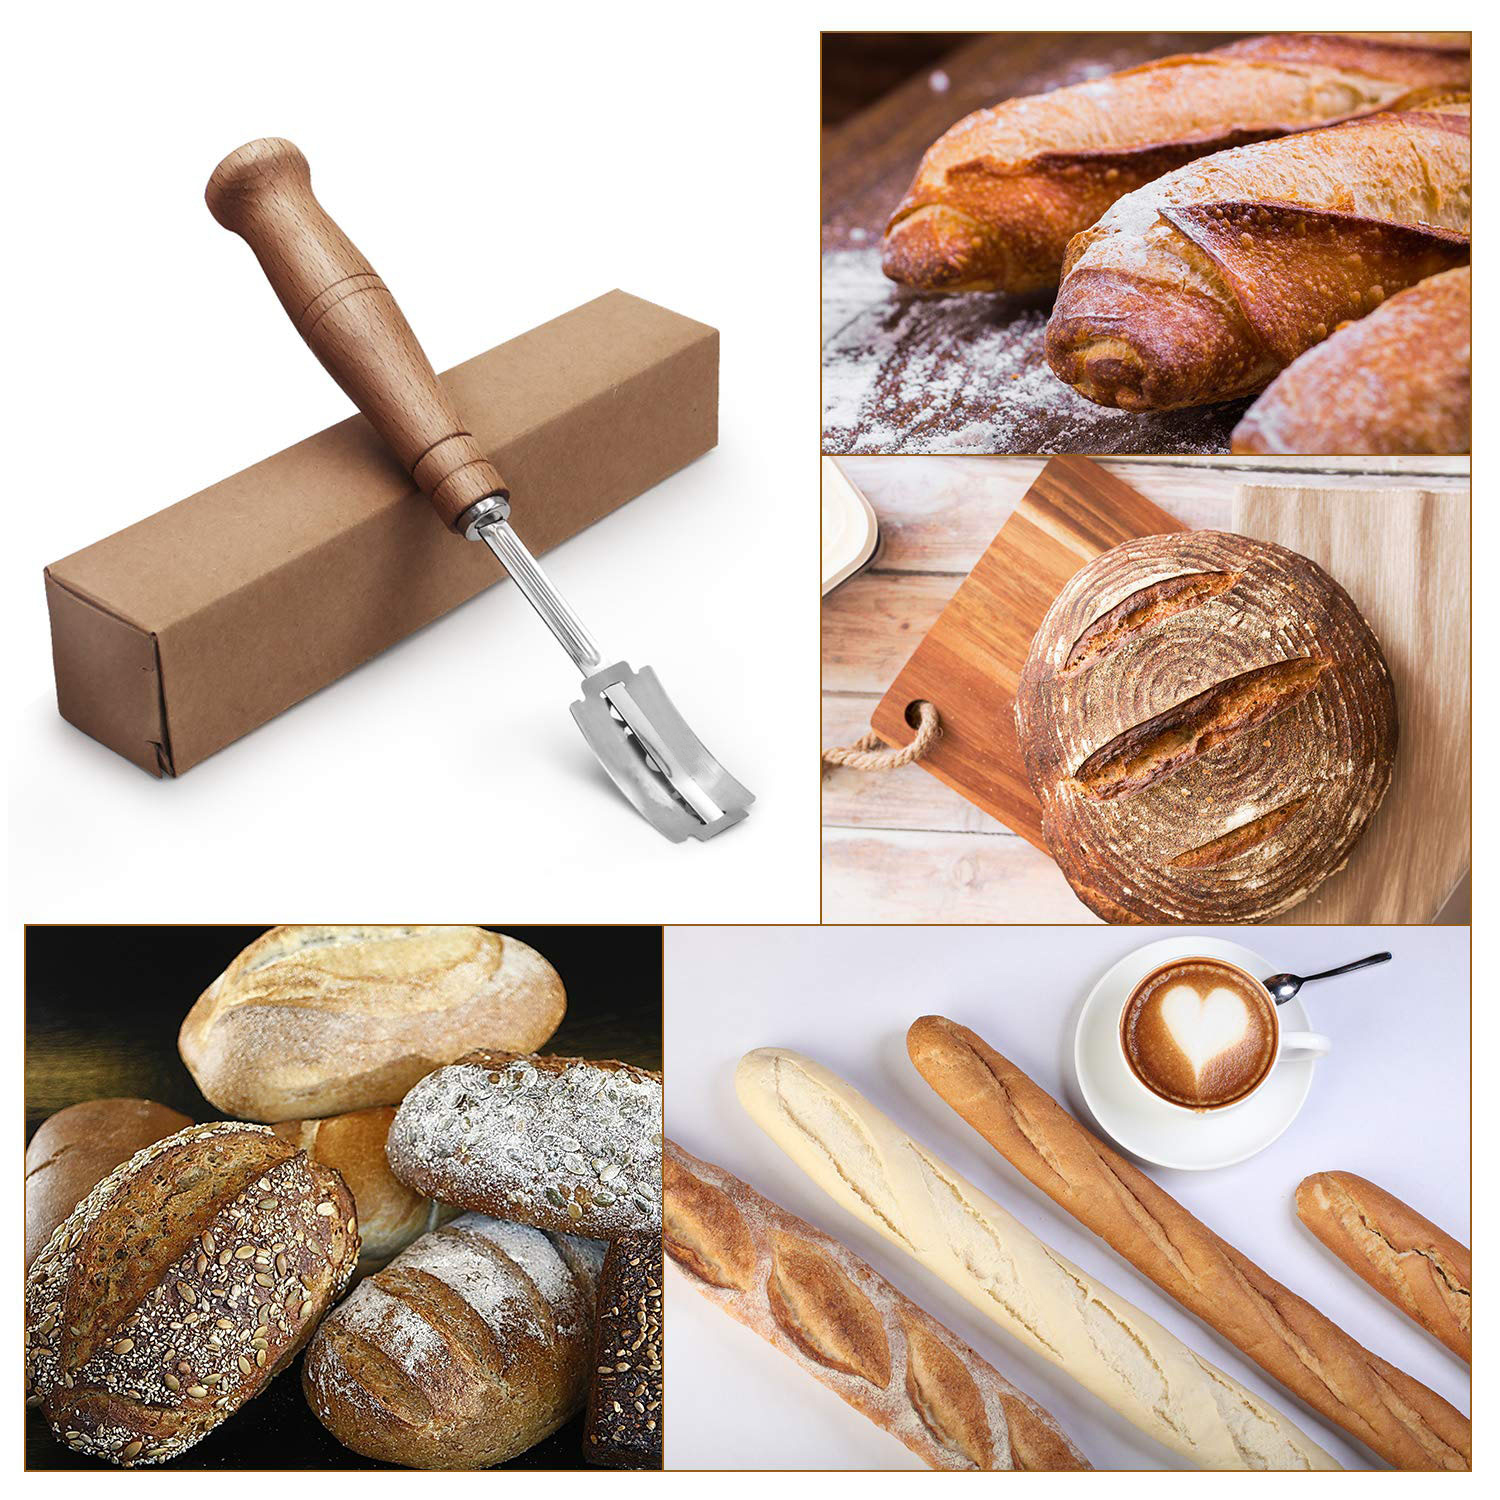 STDKDFW Bread Lame Tool,3Pcs Professional Bread Lame Dough Scoring Tool Sourdough Scoring Tool for Sourdough Bread Baking & Bread Making Tools